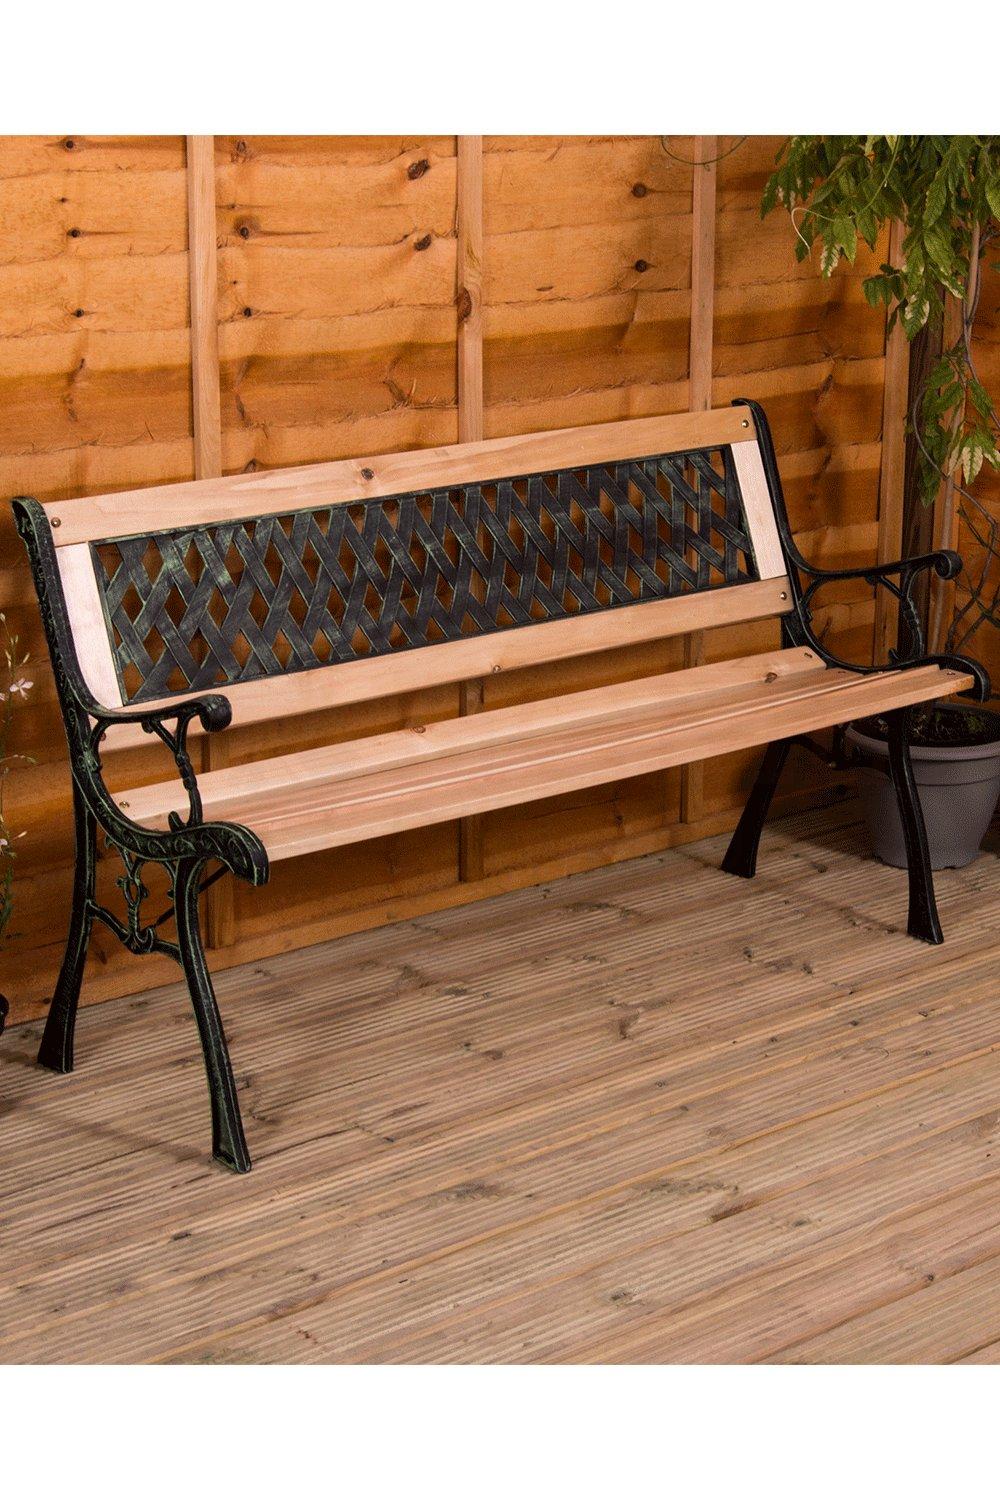 Garden Vida Garden Bench Cross Style 3 Seater Outdoor Furniture